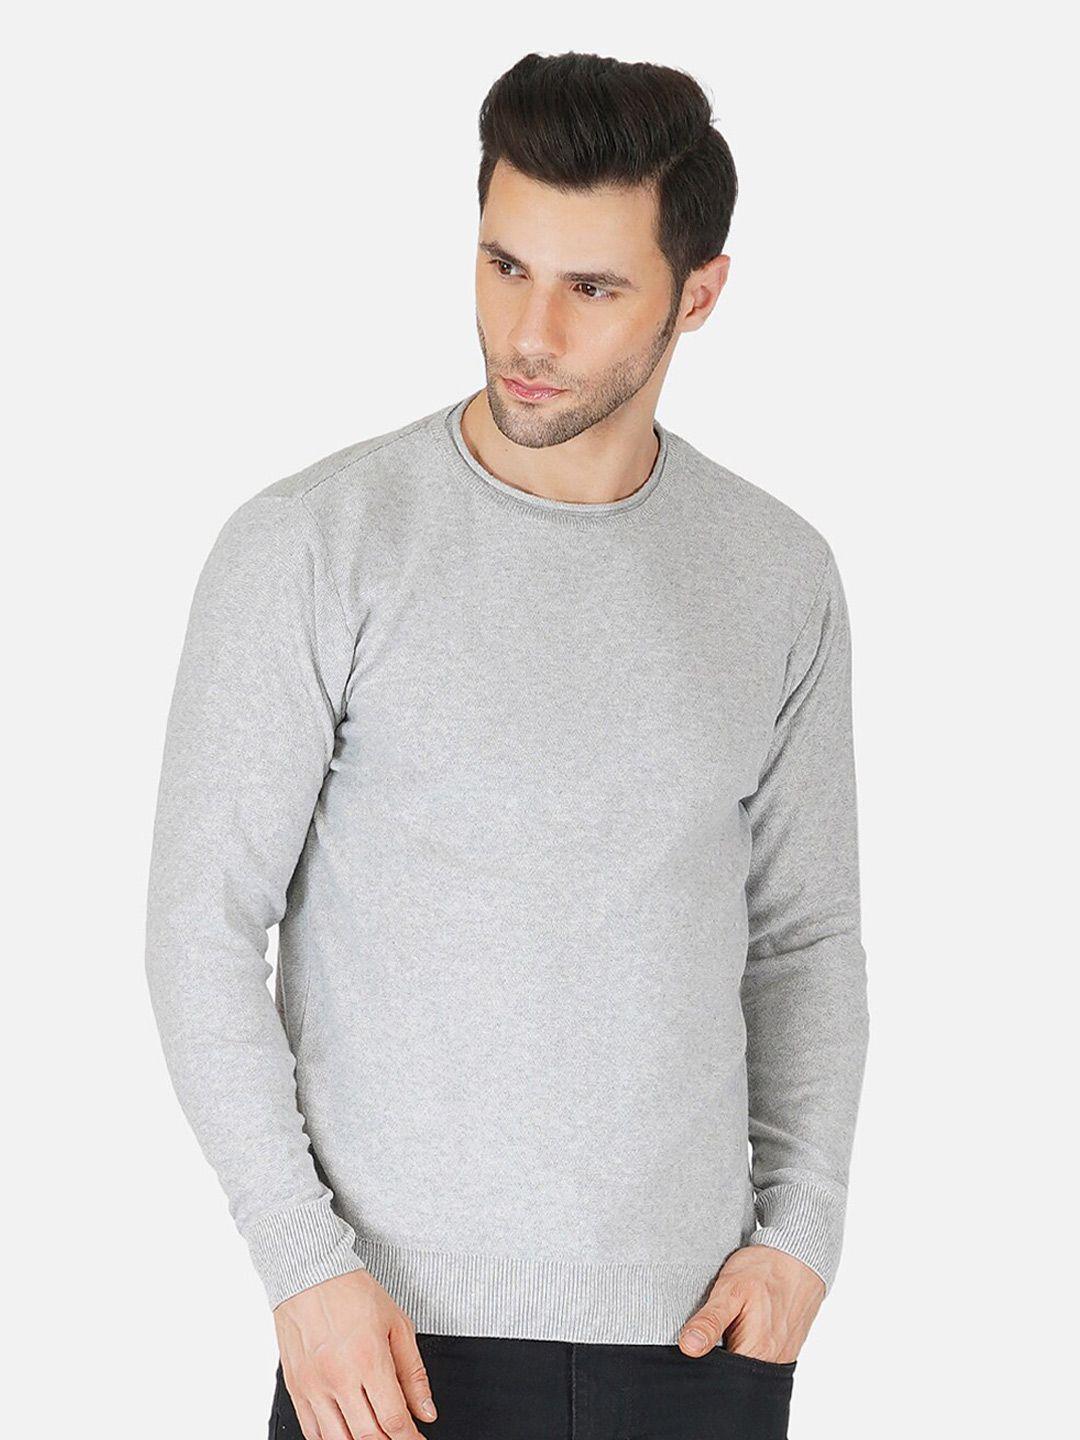 joe-hazel-men-grey-pullover-sweater